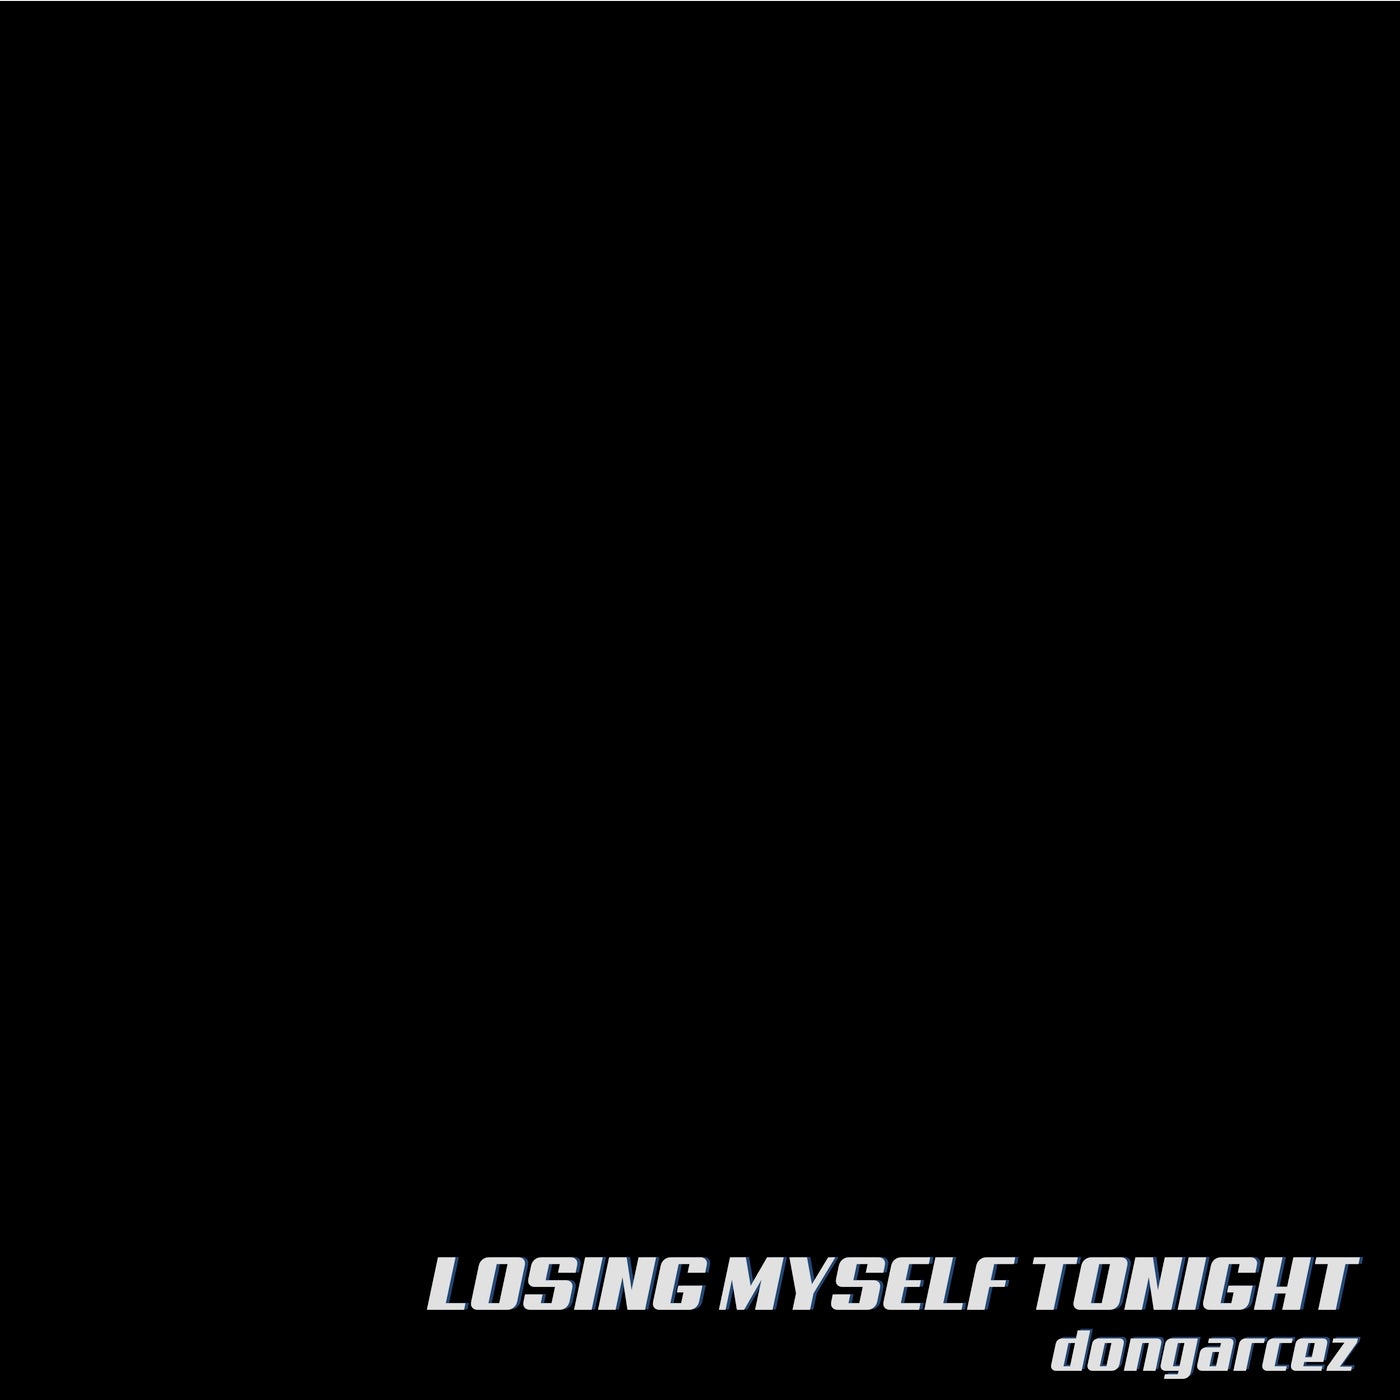 dongarcez - Losing Myself Tonight [VAN STORCK MUSIC]